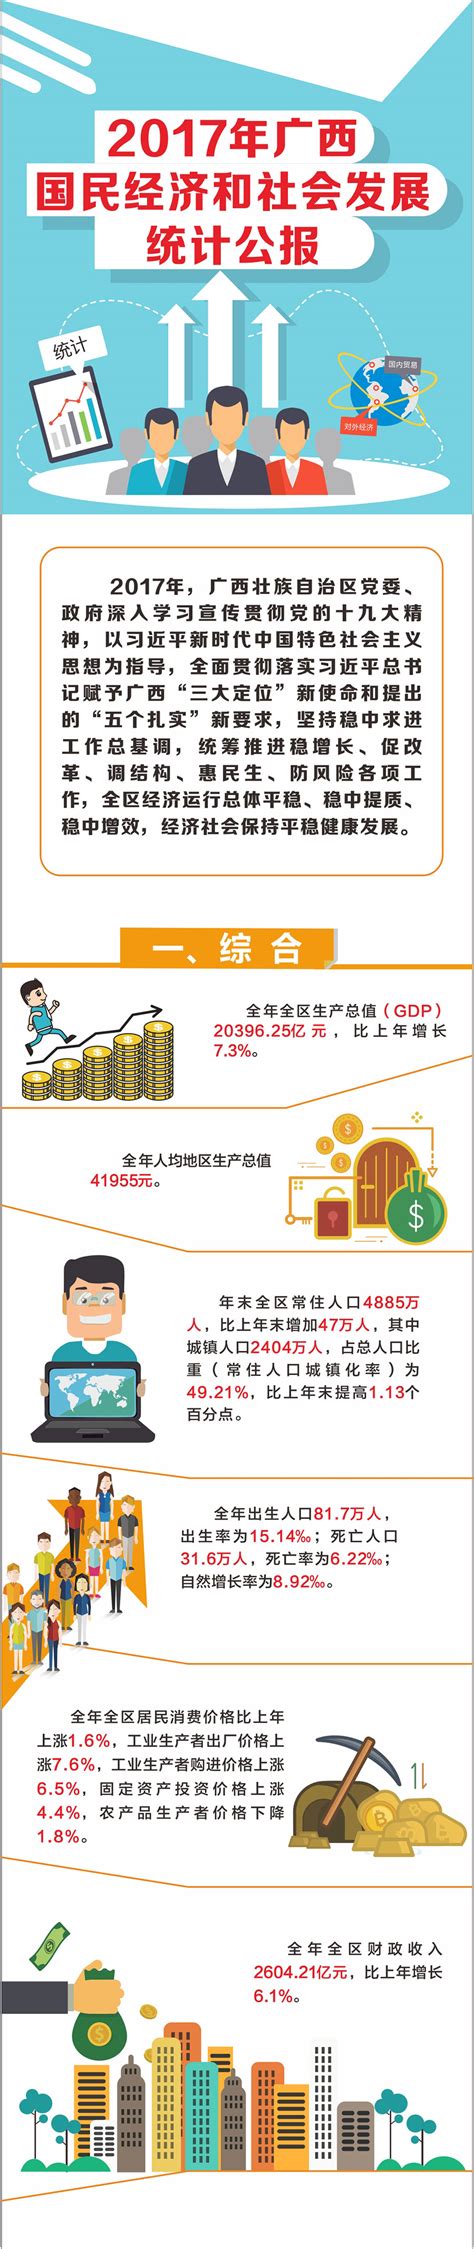 【一图读懂】2017年广西国民经济和社会发展统计公报-广西壮族自治区统计局